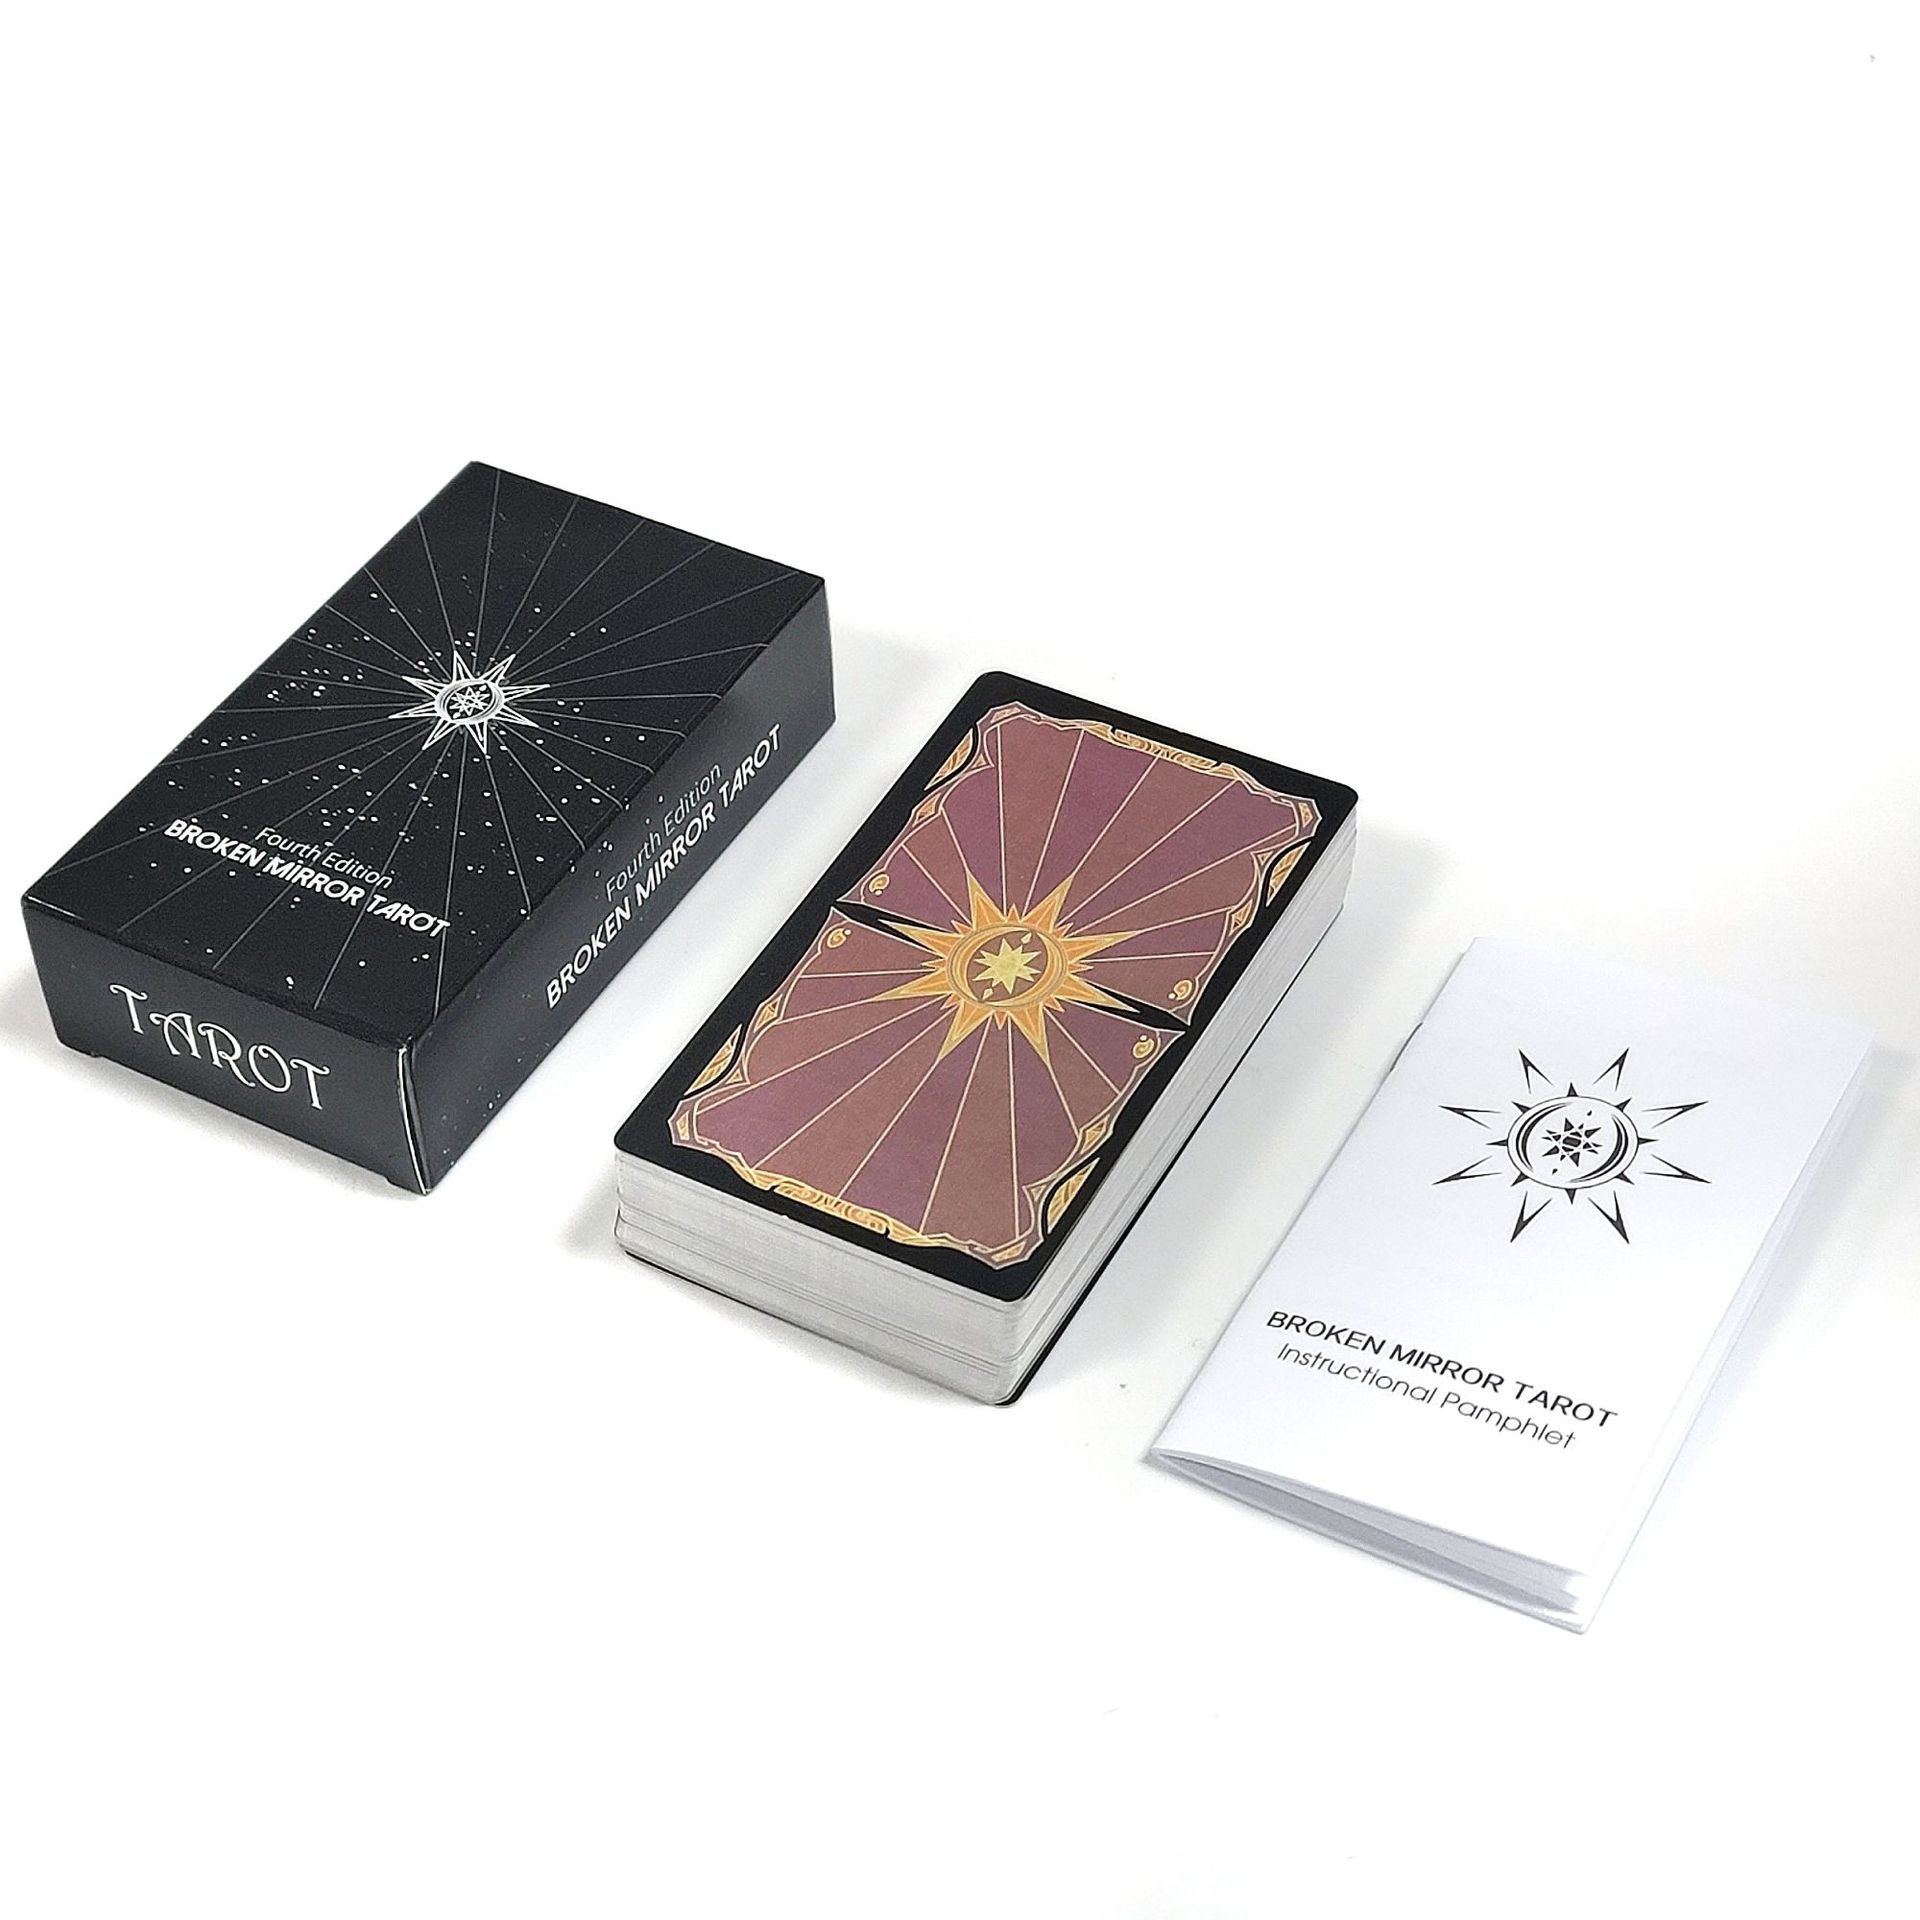 2022 Новый английский Amazon's Broken Mirror Card Games Pan Wet Luo Brand производитель оптовых брендов бесплатные